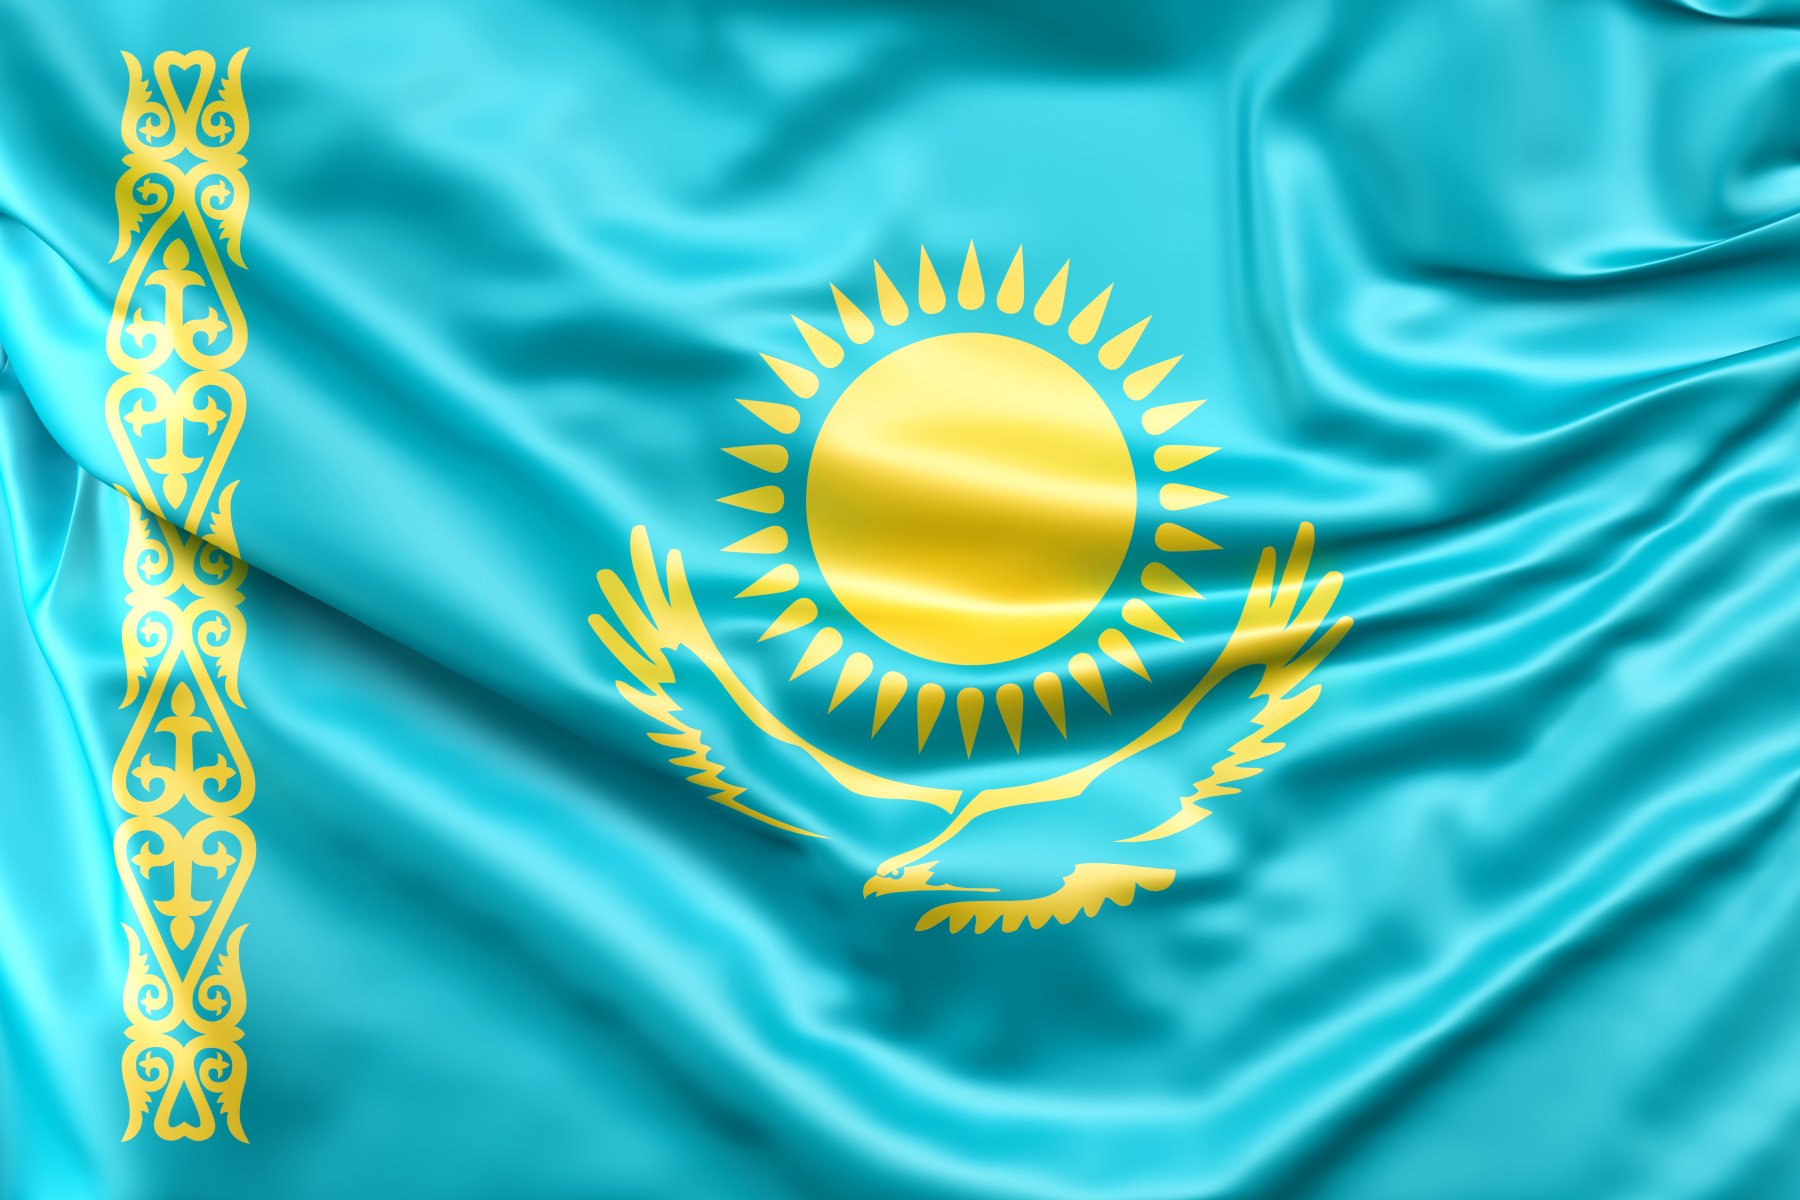 Казахстан убрал талибов из списка террористов ради развития экономического взаимодействия